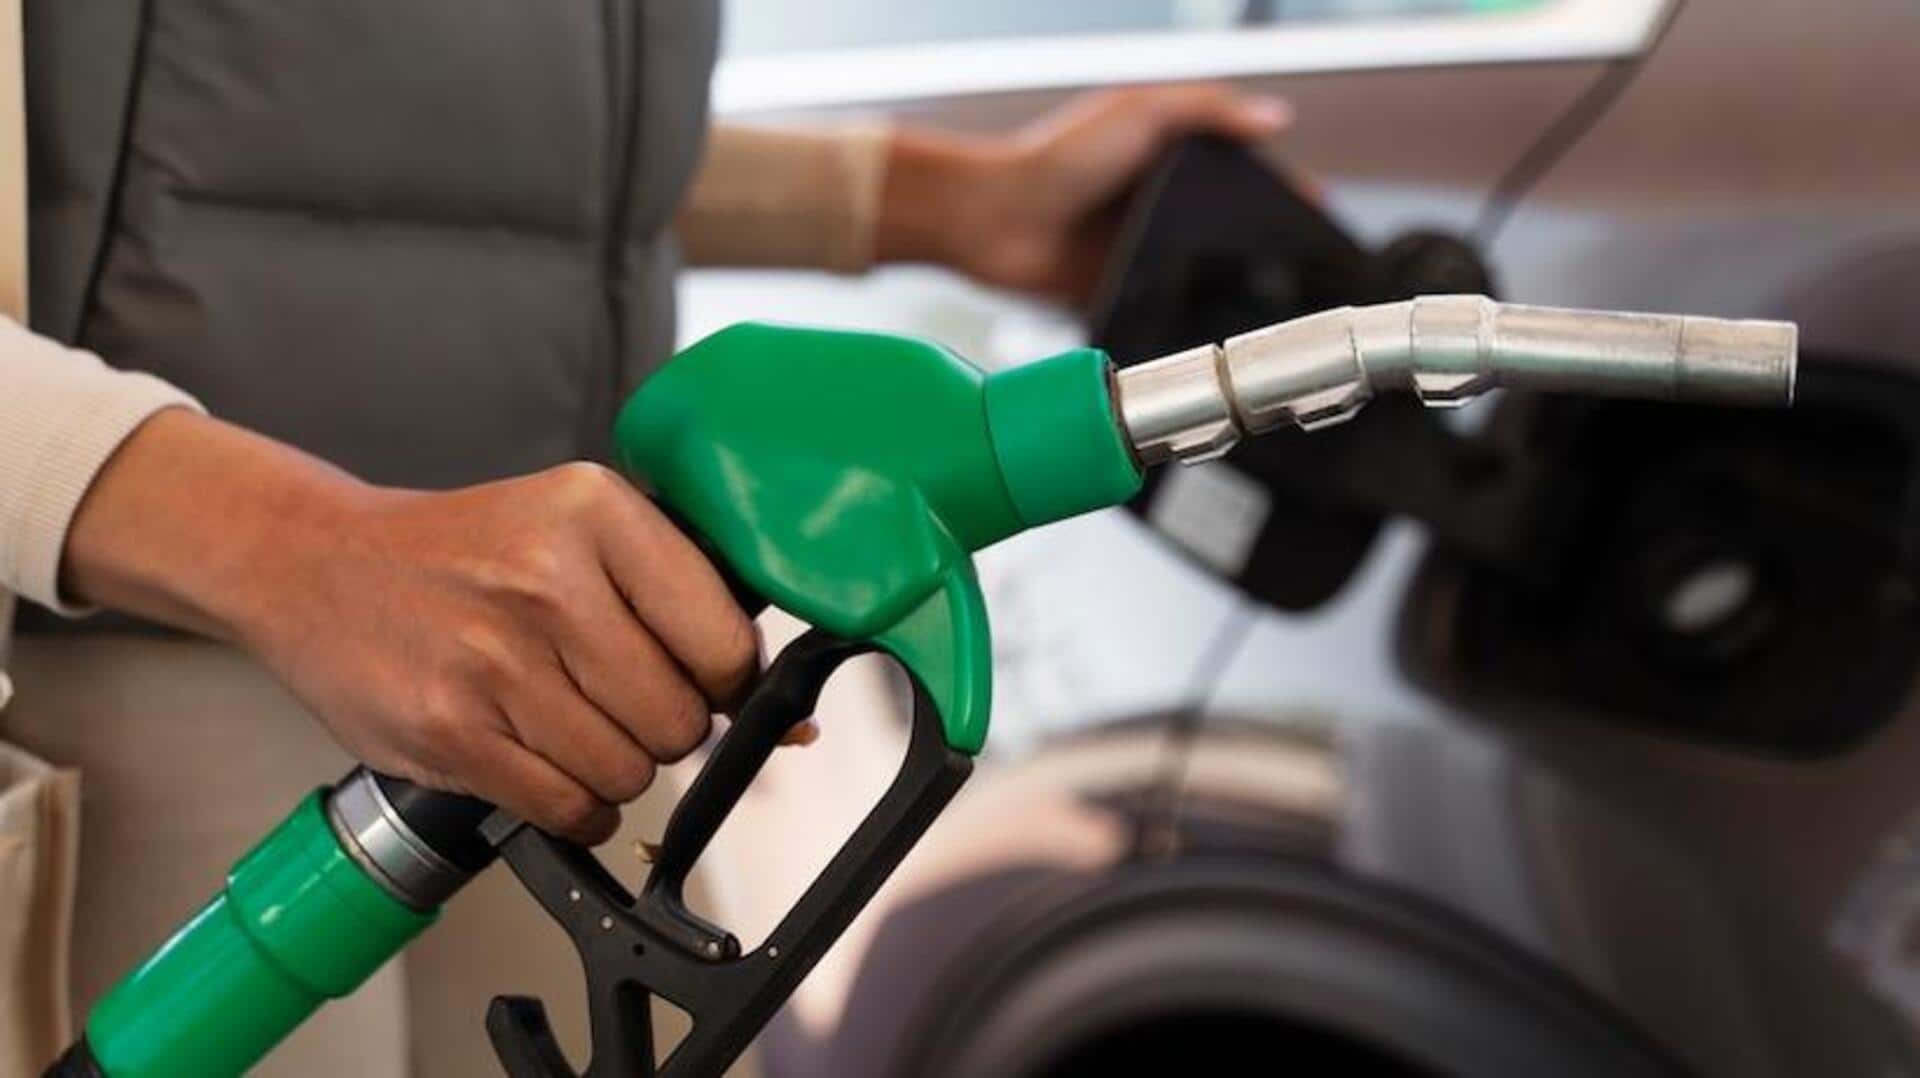 पेट्रोल-डीजल की कीमत: 18 दिसंबर के लिए पेट्रोल-डीजल के नए रेट जारी, कहां-कहां बदले? 